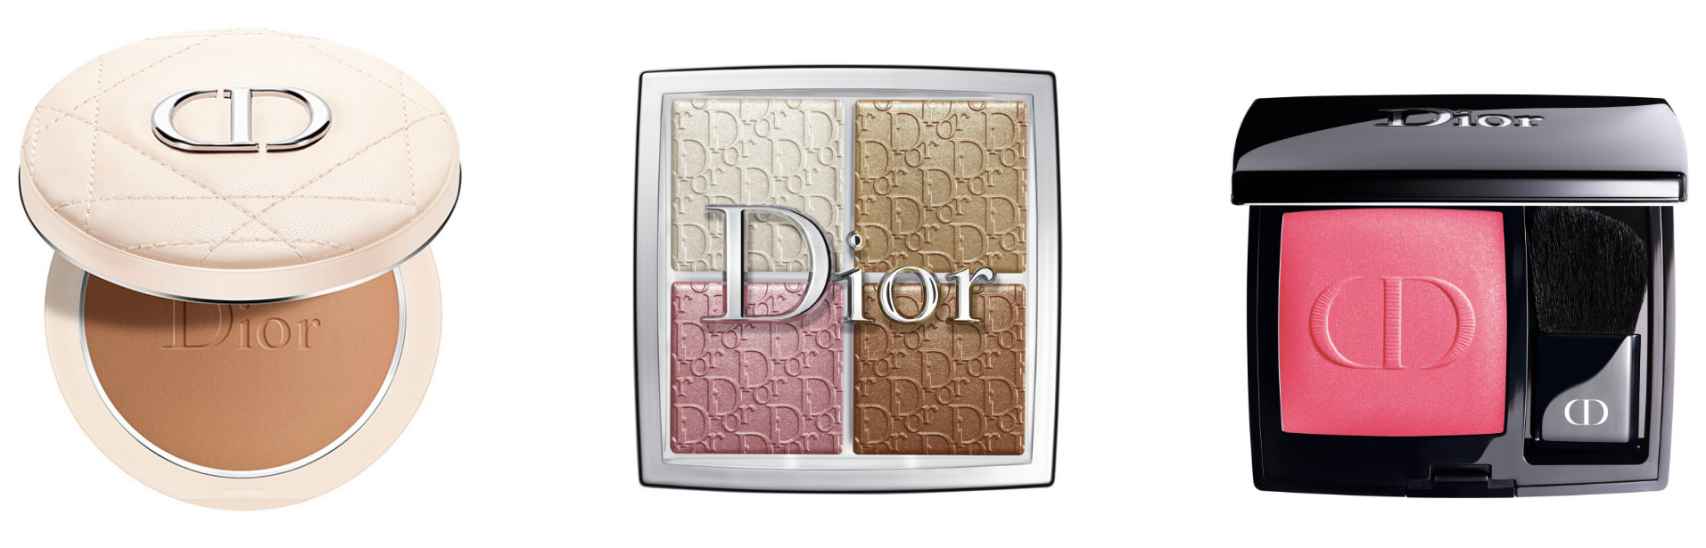 Polvos, iluminador y colorete de Dior.